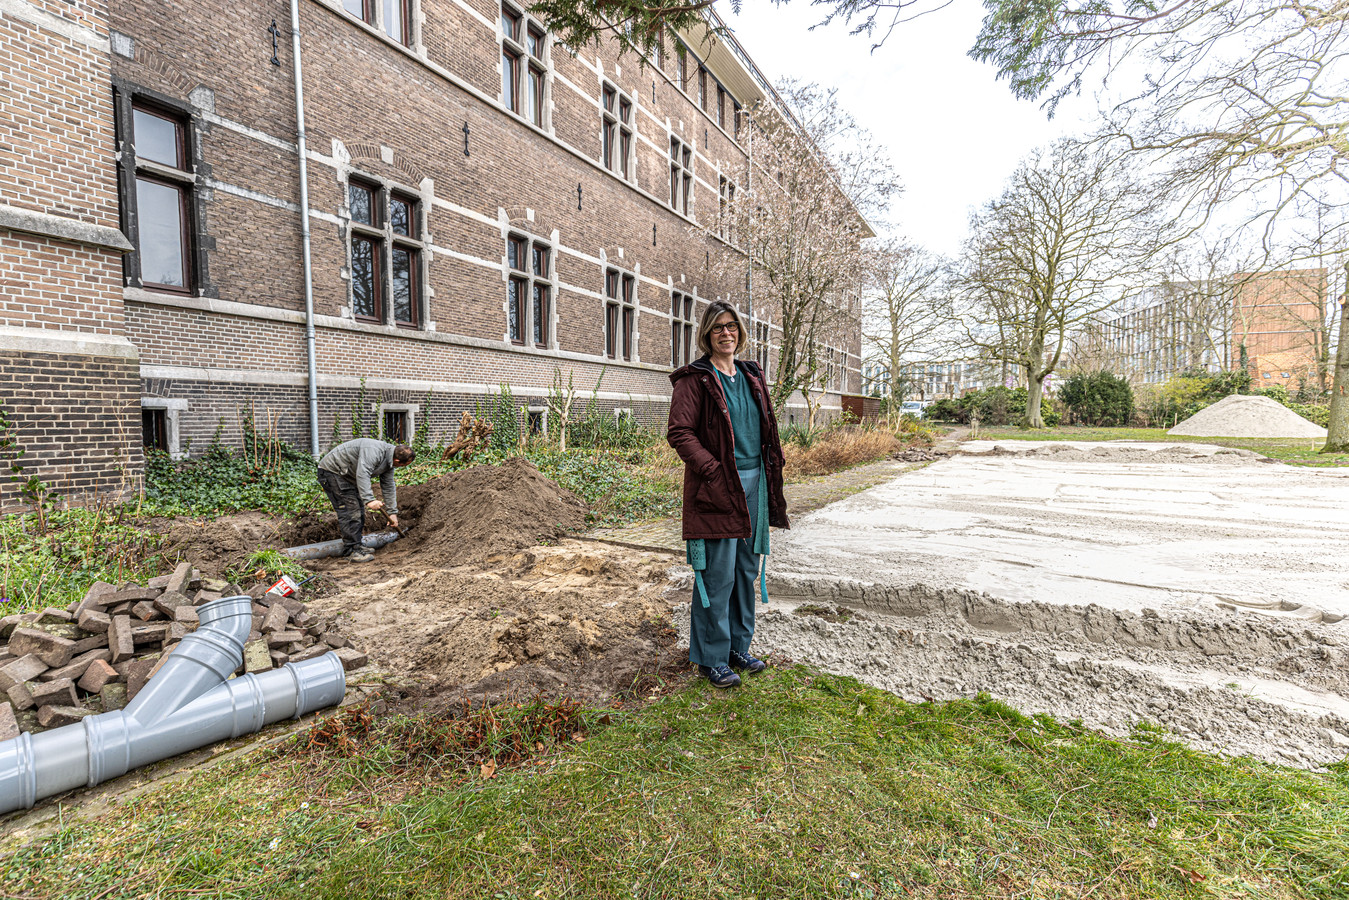 Werk aan de locatie waar de vluchtelingen komen, bijvoorbeeld voor het plaatsen van de sanitaire voorzieningen in de tuin. Projectleider is Hilde van Werven.